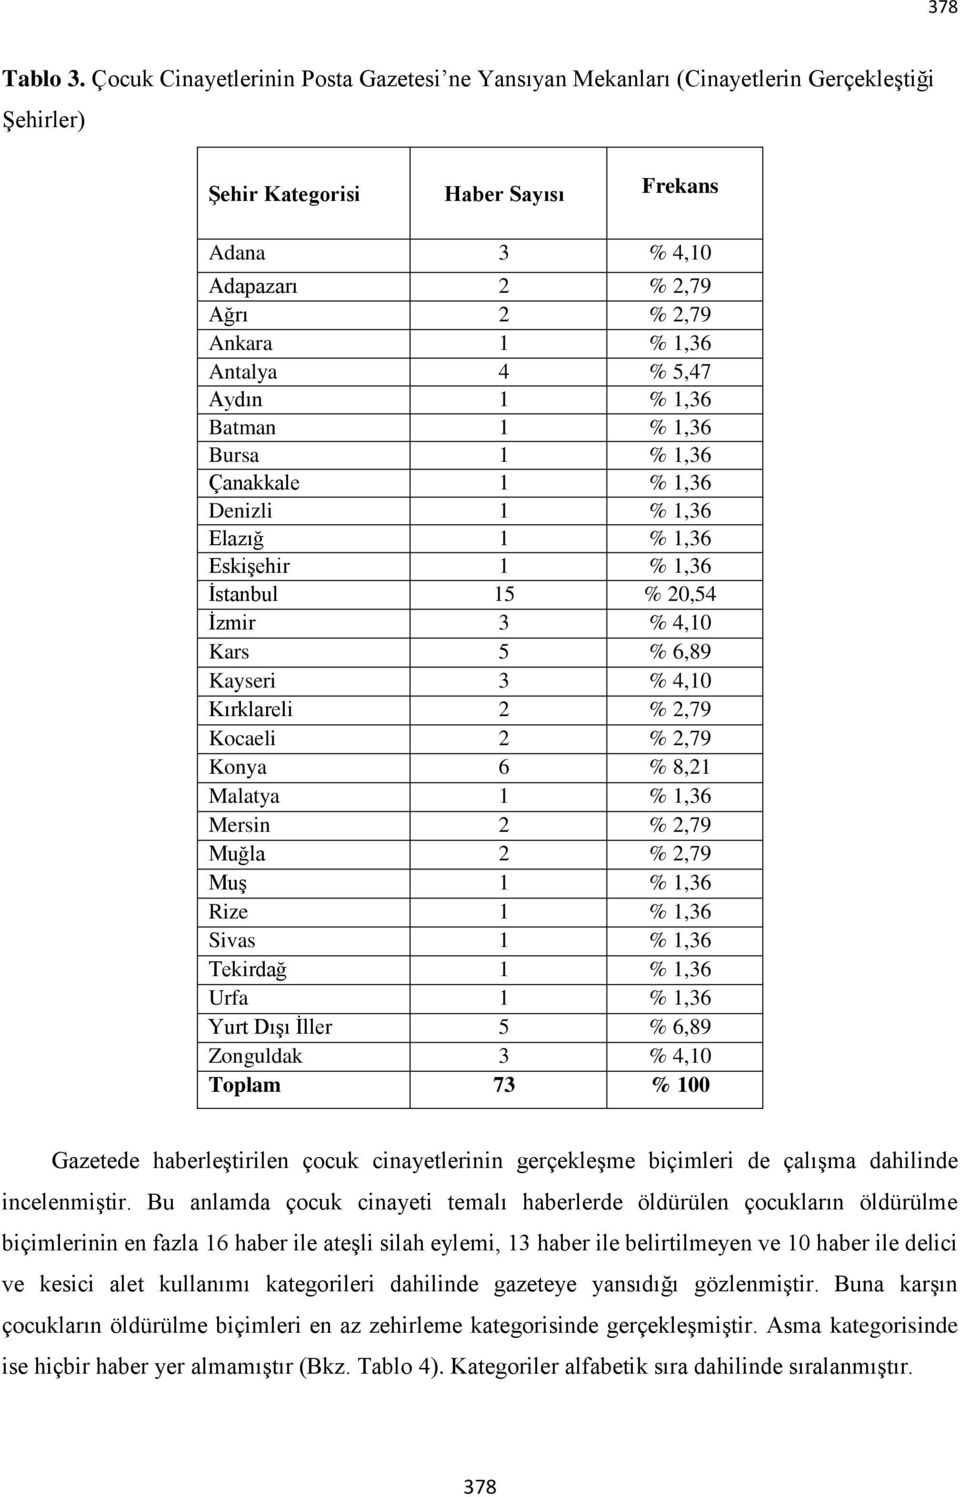 Antalya 4 % 5,47 Aydın 1 % 1,36 Batman 1 % 1,36 Bursa 1 % 1,36 Çanakkale 1 % 1,36 Denizli 1 % 1,36 Elazığ 1 % 1,36 Eskişehir 1 % 1,36 İstanbul 15 % 20,54 İzmir 3 % 4,10 Kars 5 % 6,89 Kayseri 3 % 4,10